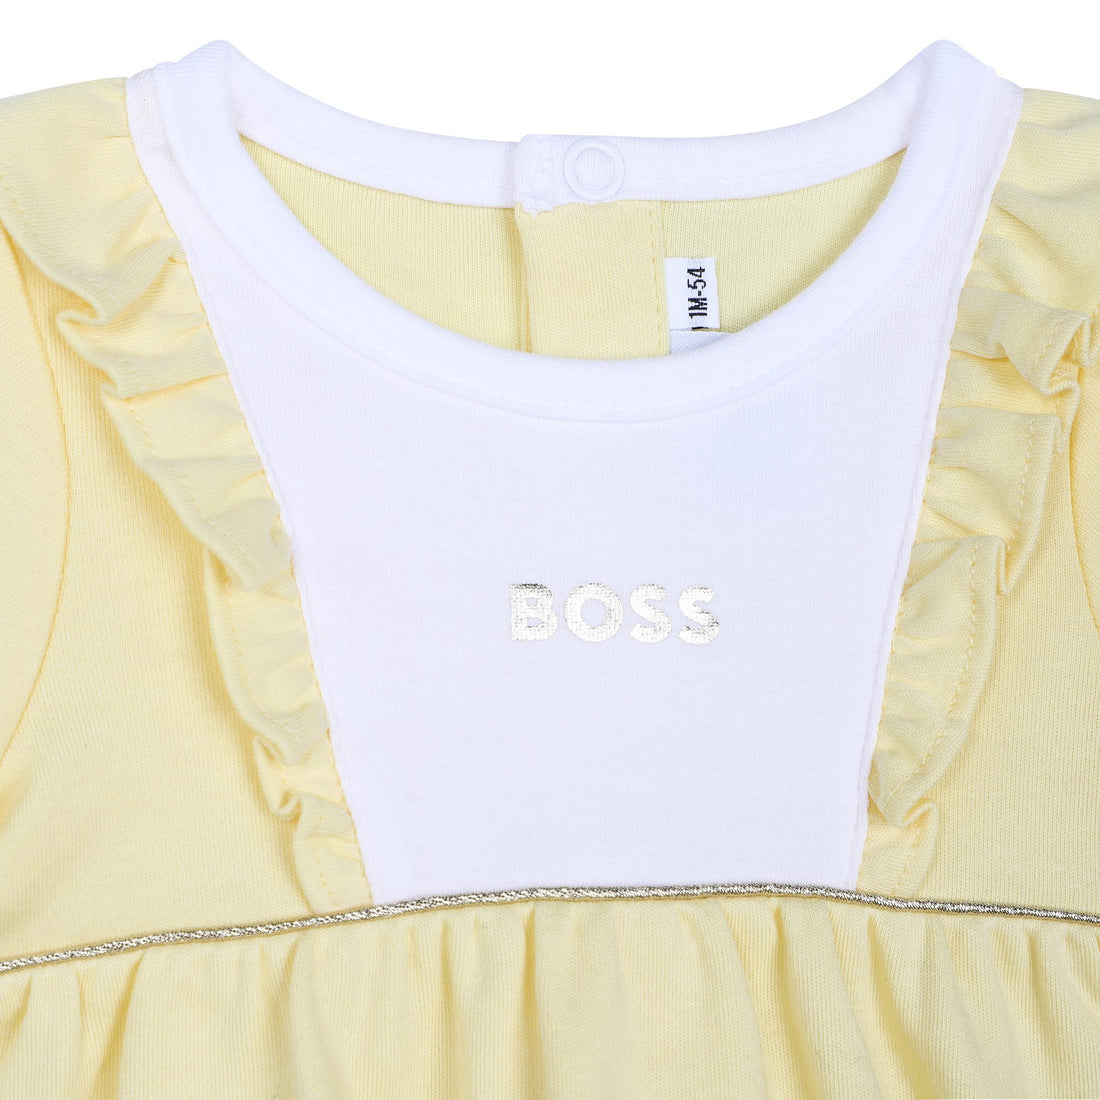 Hugo Boss Short Sleeved Dress Style: J92079